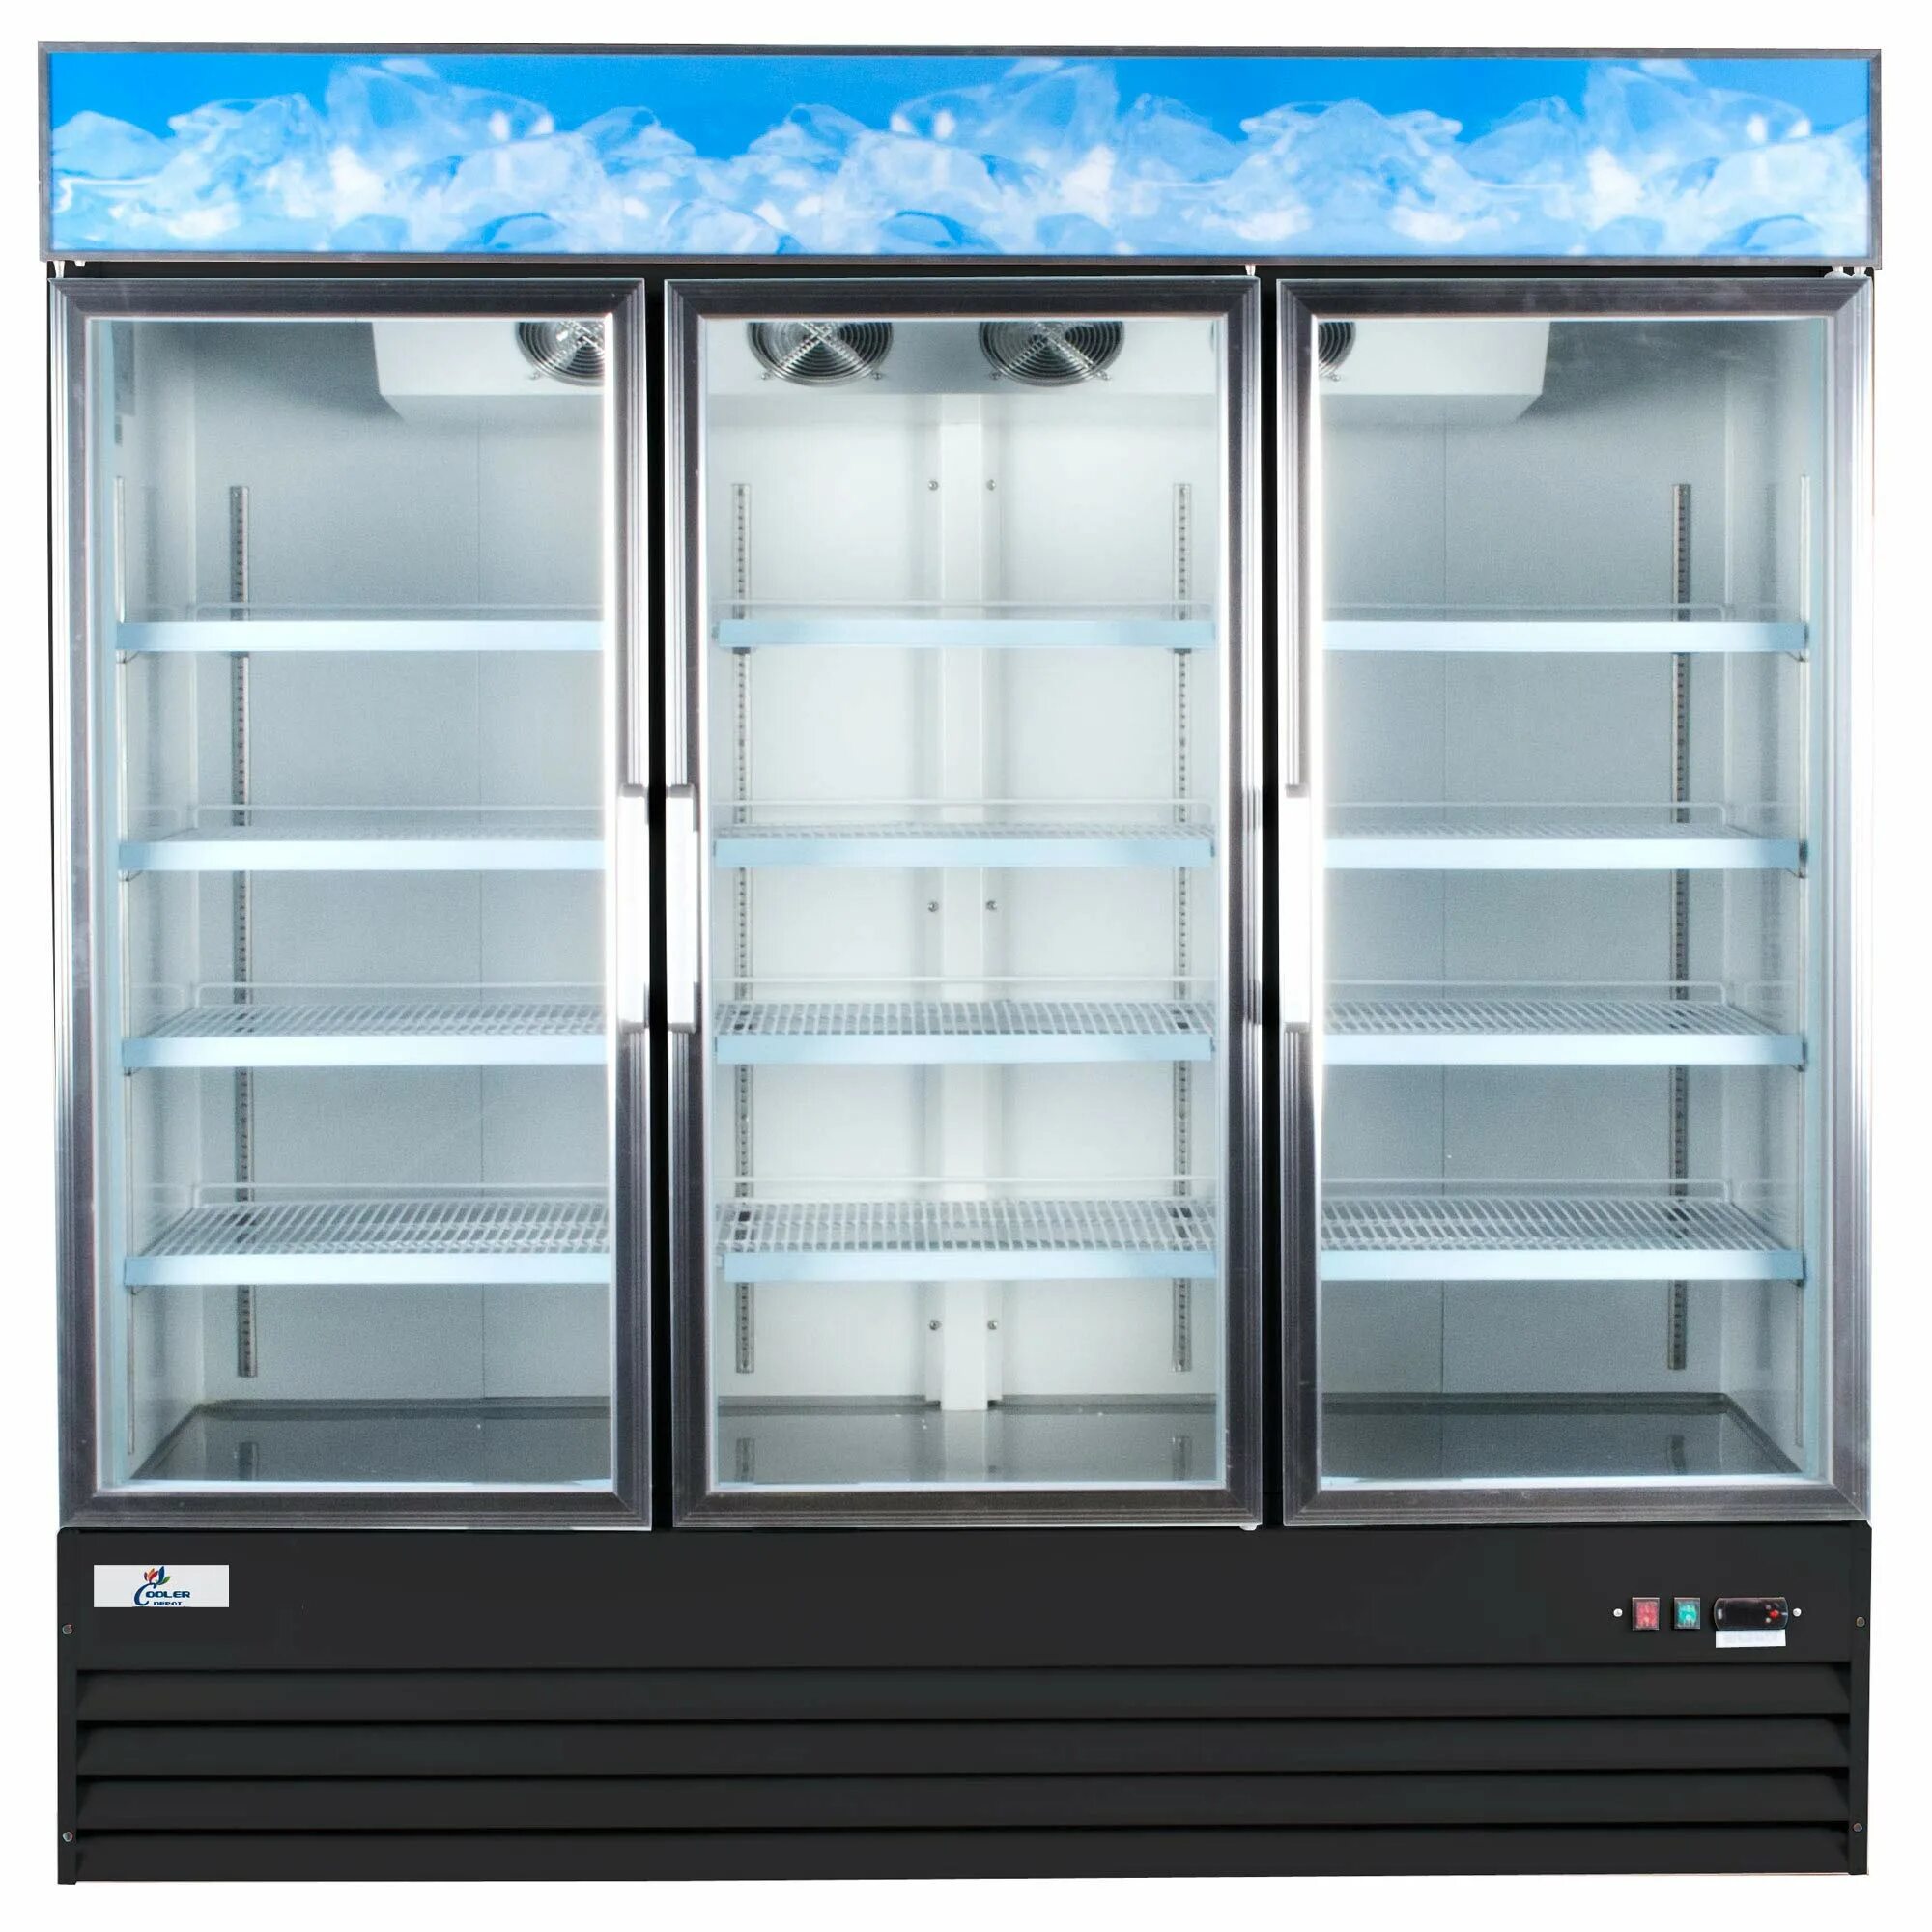 Вертикальный холодильник витрина. Холодильный шкаф Cold s700. Шкаф холодильный Carboma f700. Холодильный шкаф Carboma r560 (приложение 3.2.). Шкаф холодильный dm110sd-s.